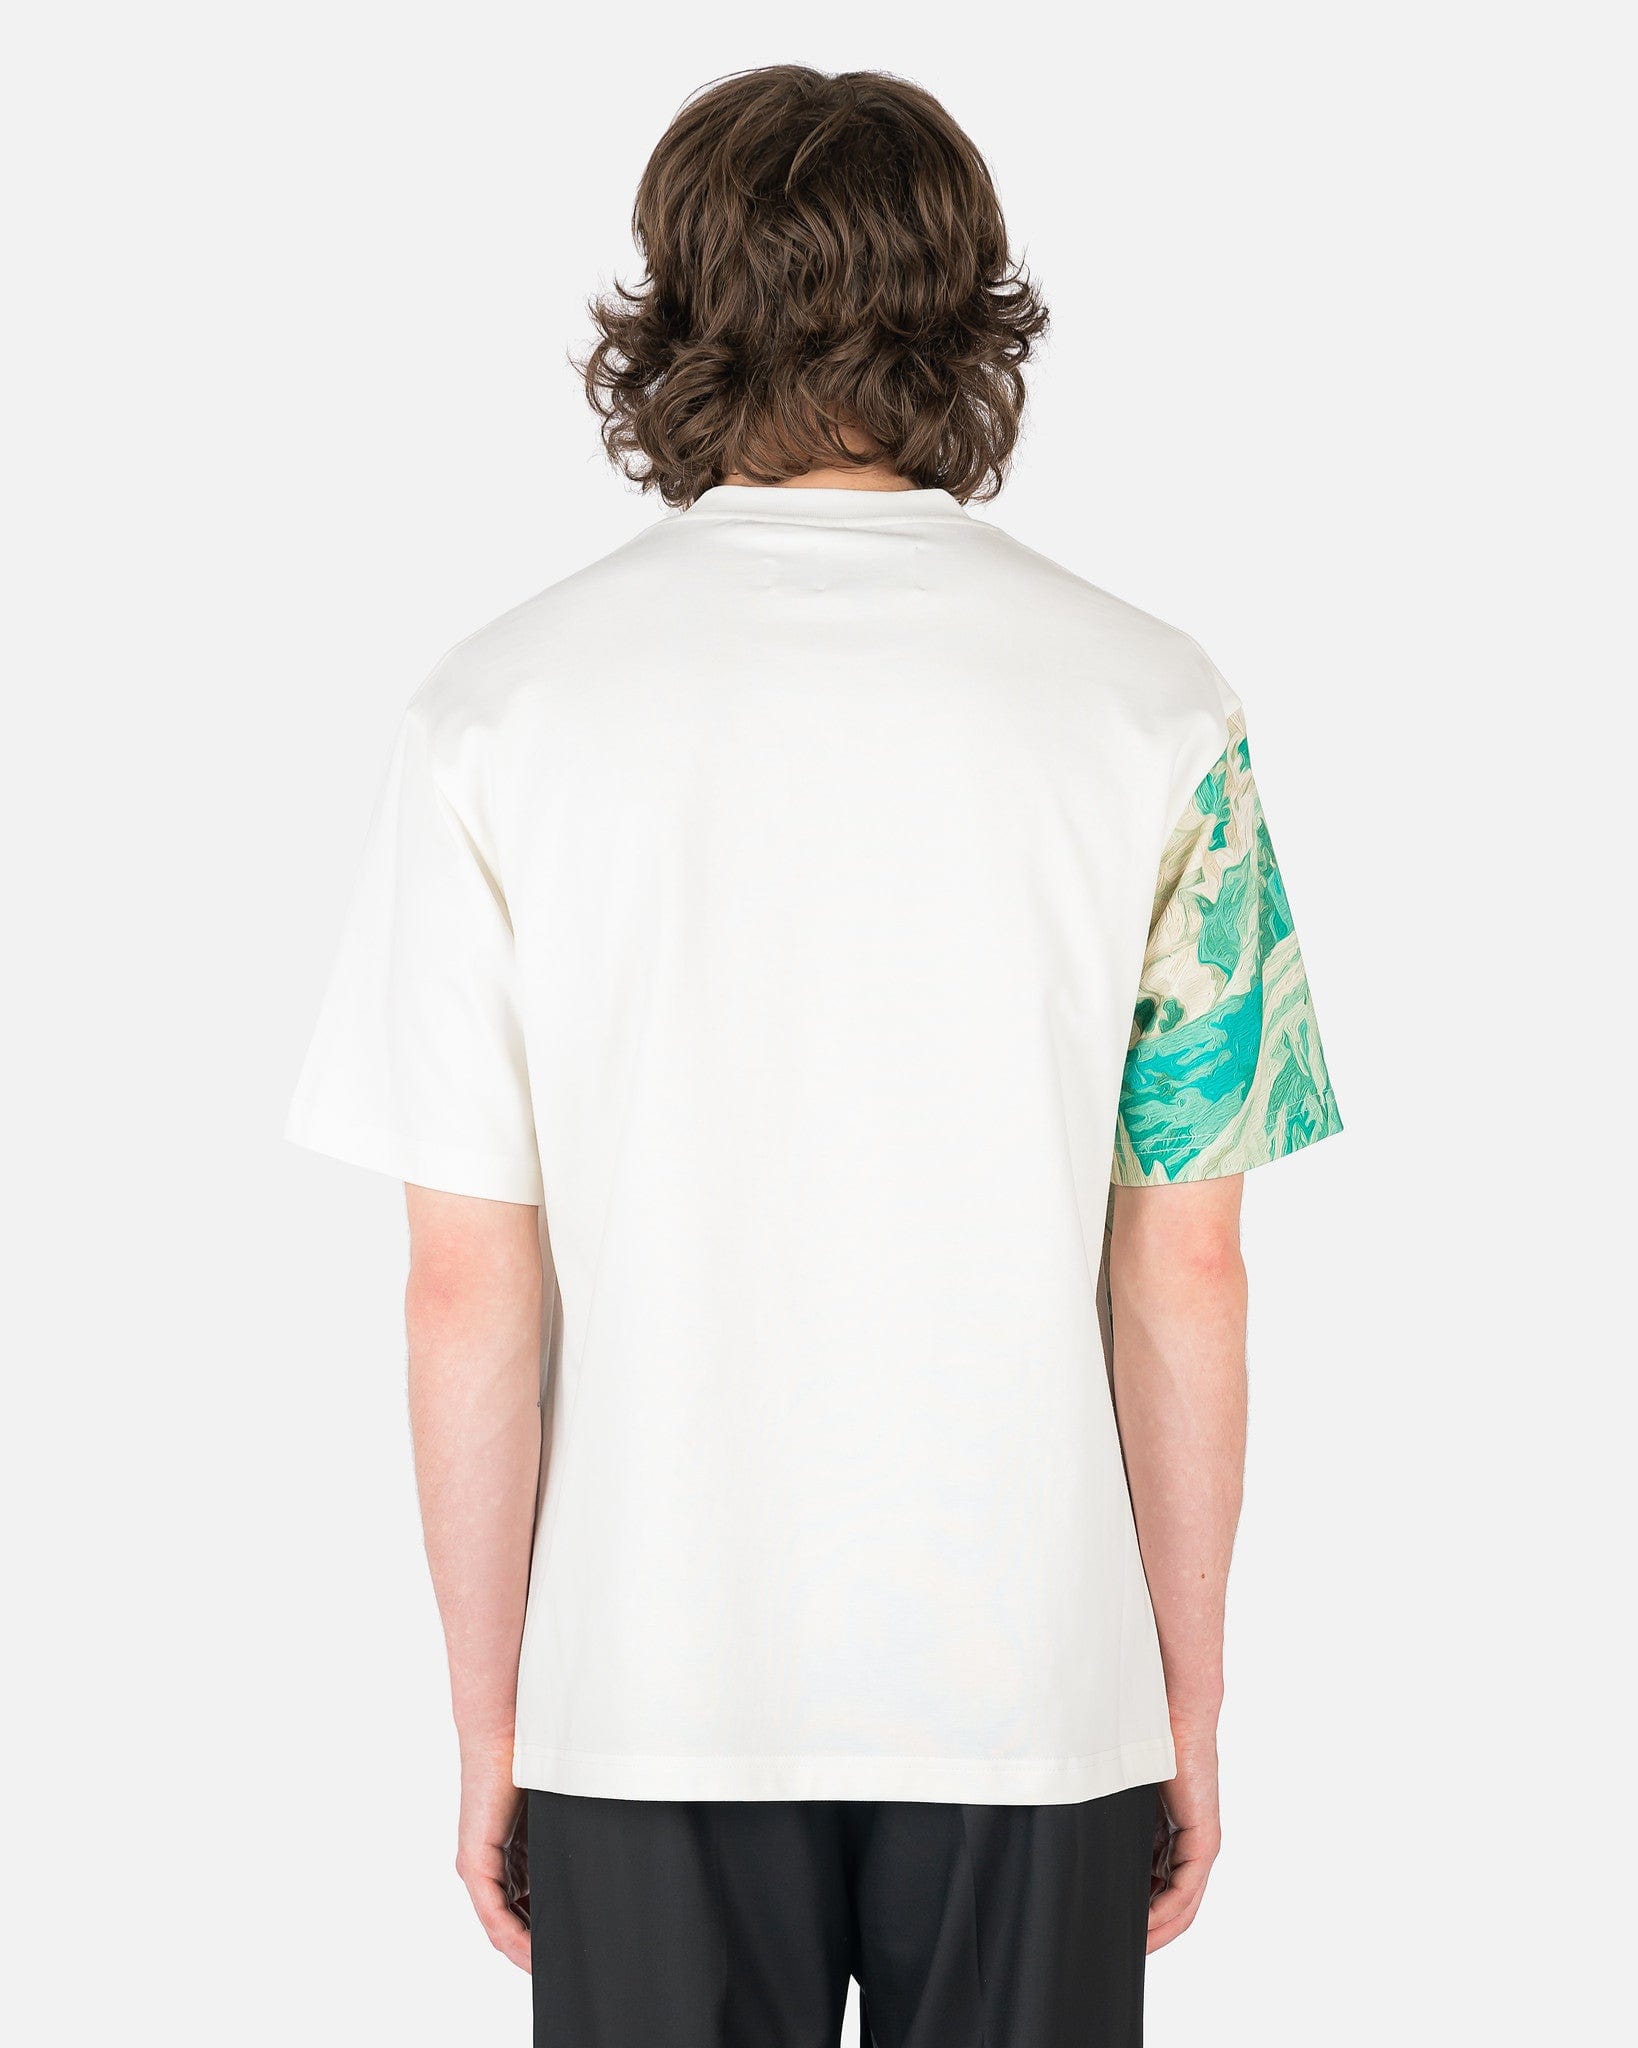 Feng Chen Wang Men's T-Shirts Watercolor Print T-Shirt in White/Green